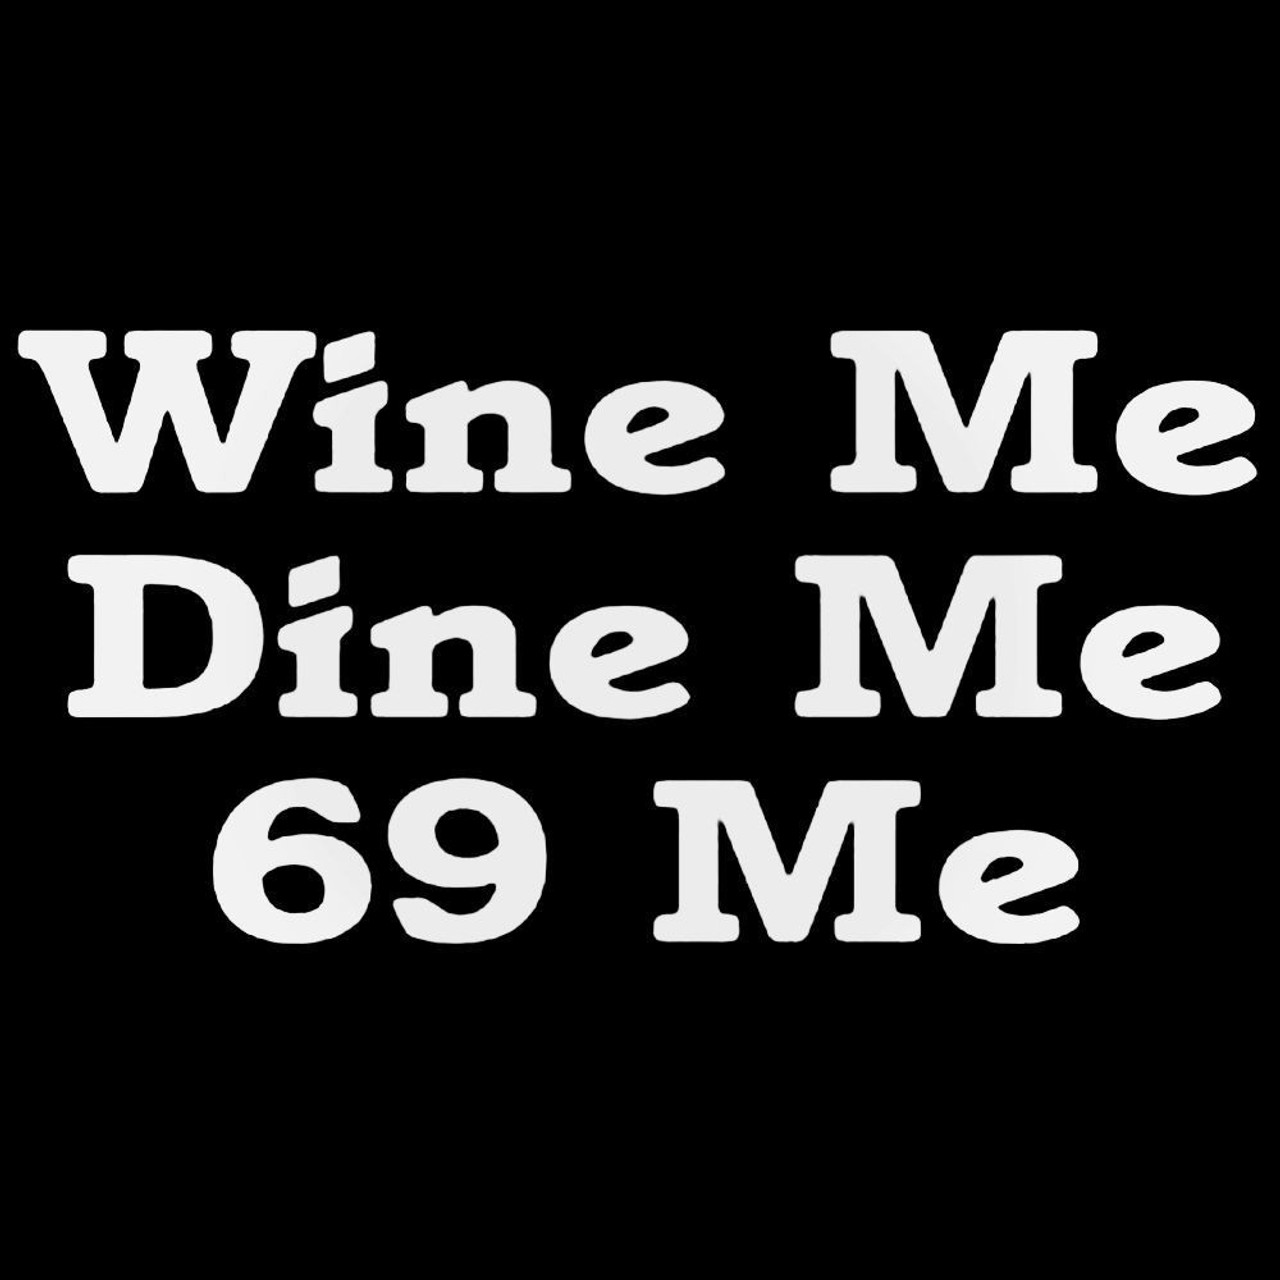 dennis montiel recommends Wine Me Dine Me 69 Me